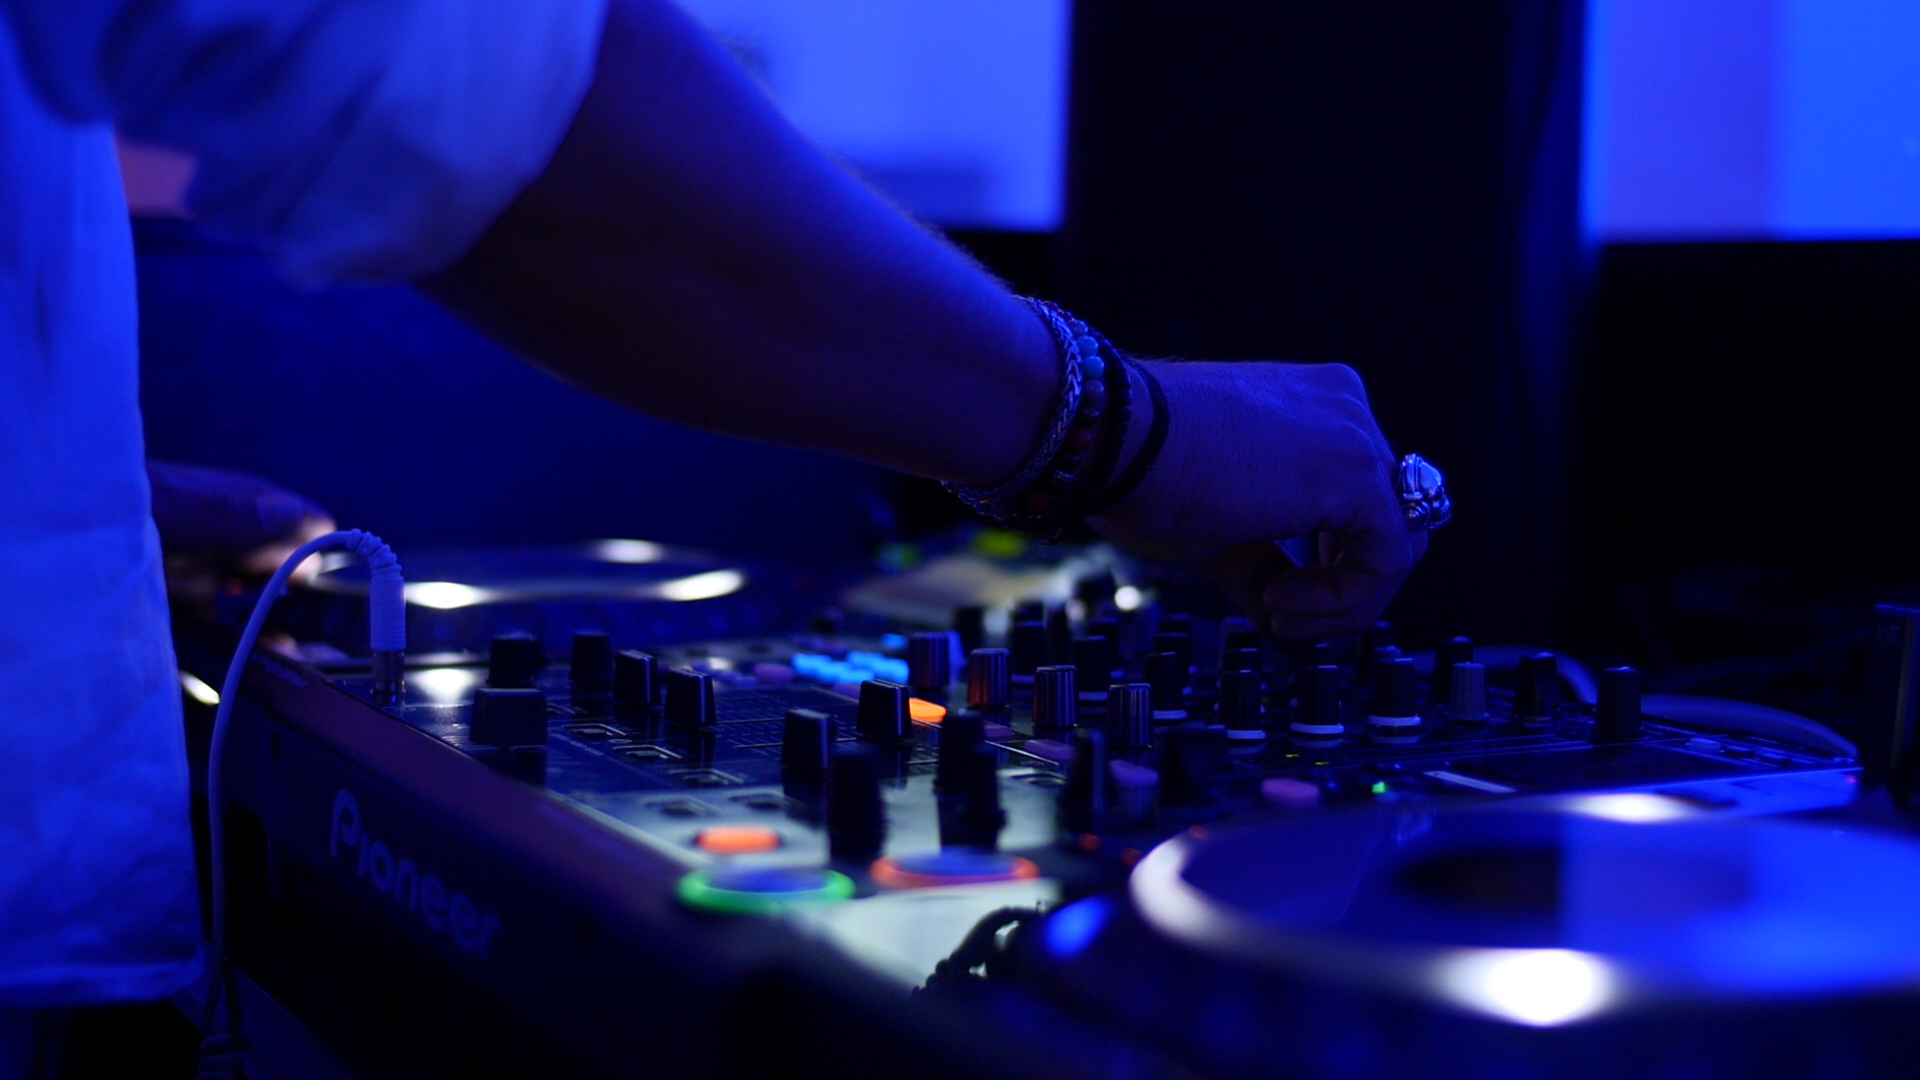 Man sieht ein DJ-Pult und die Hände des DJs bei Party-Beleuchtung